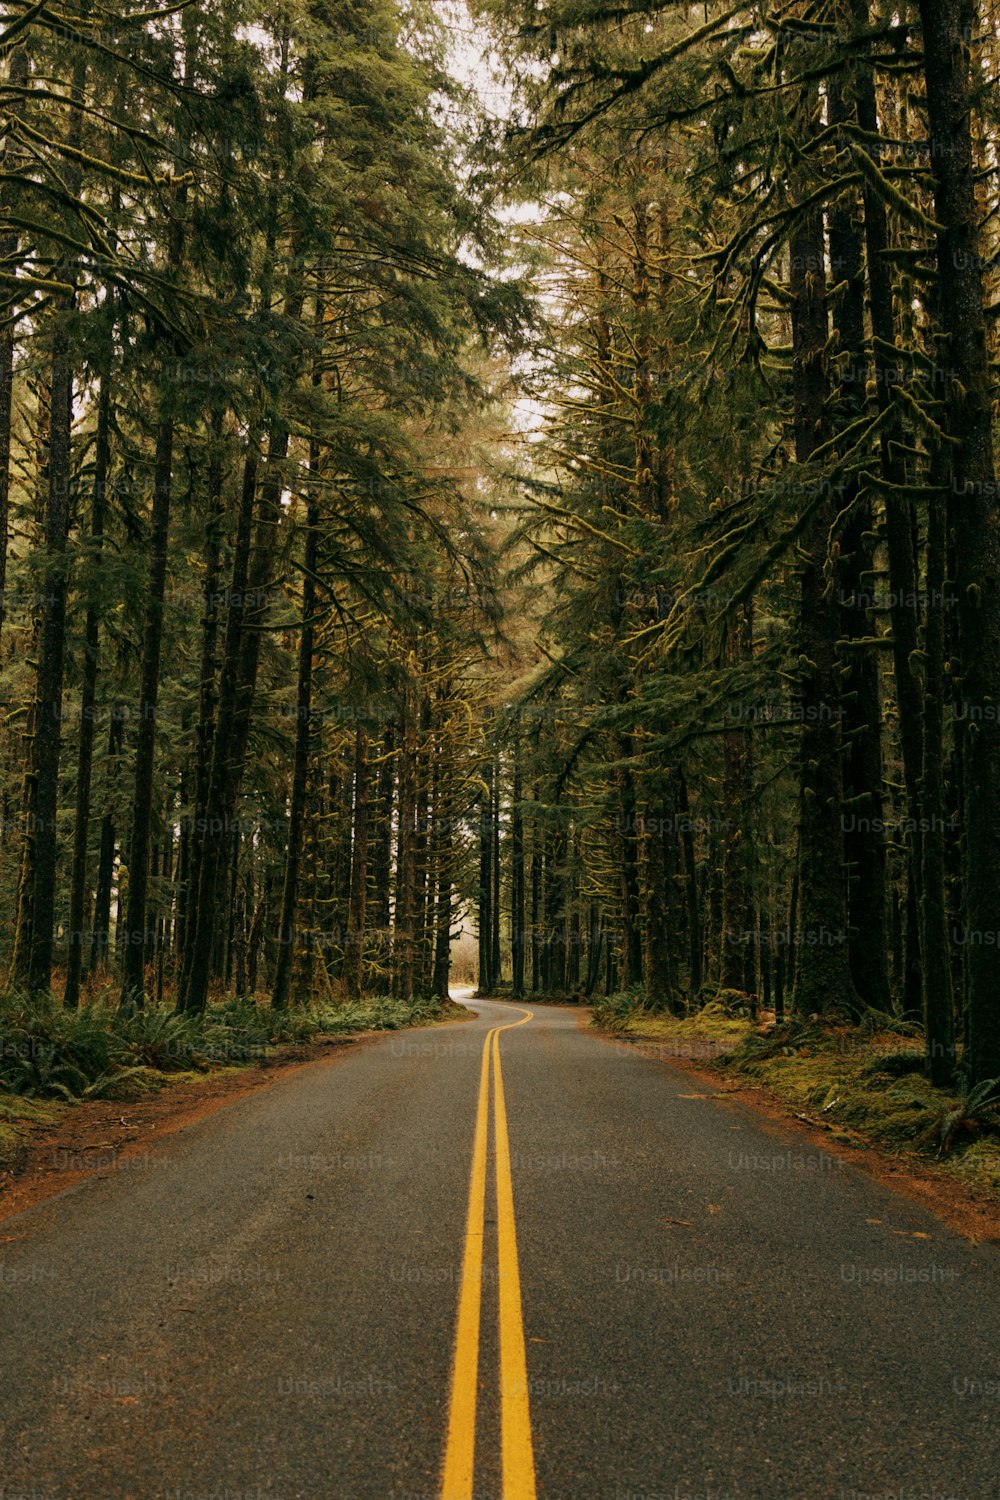 eine Straße mitten in einem Wald, der von hohen Bäumen ges�äumt ist